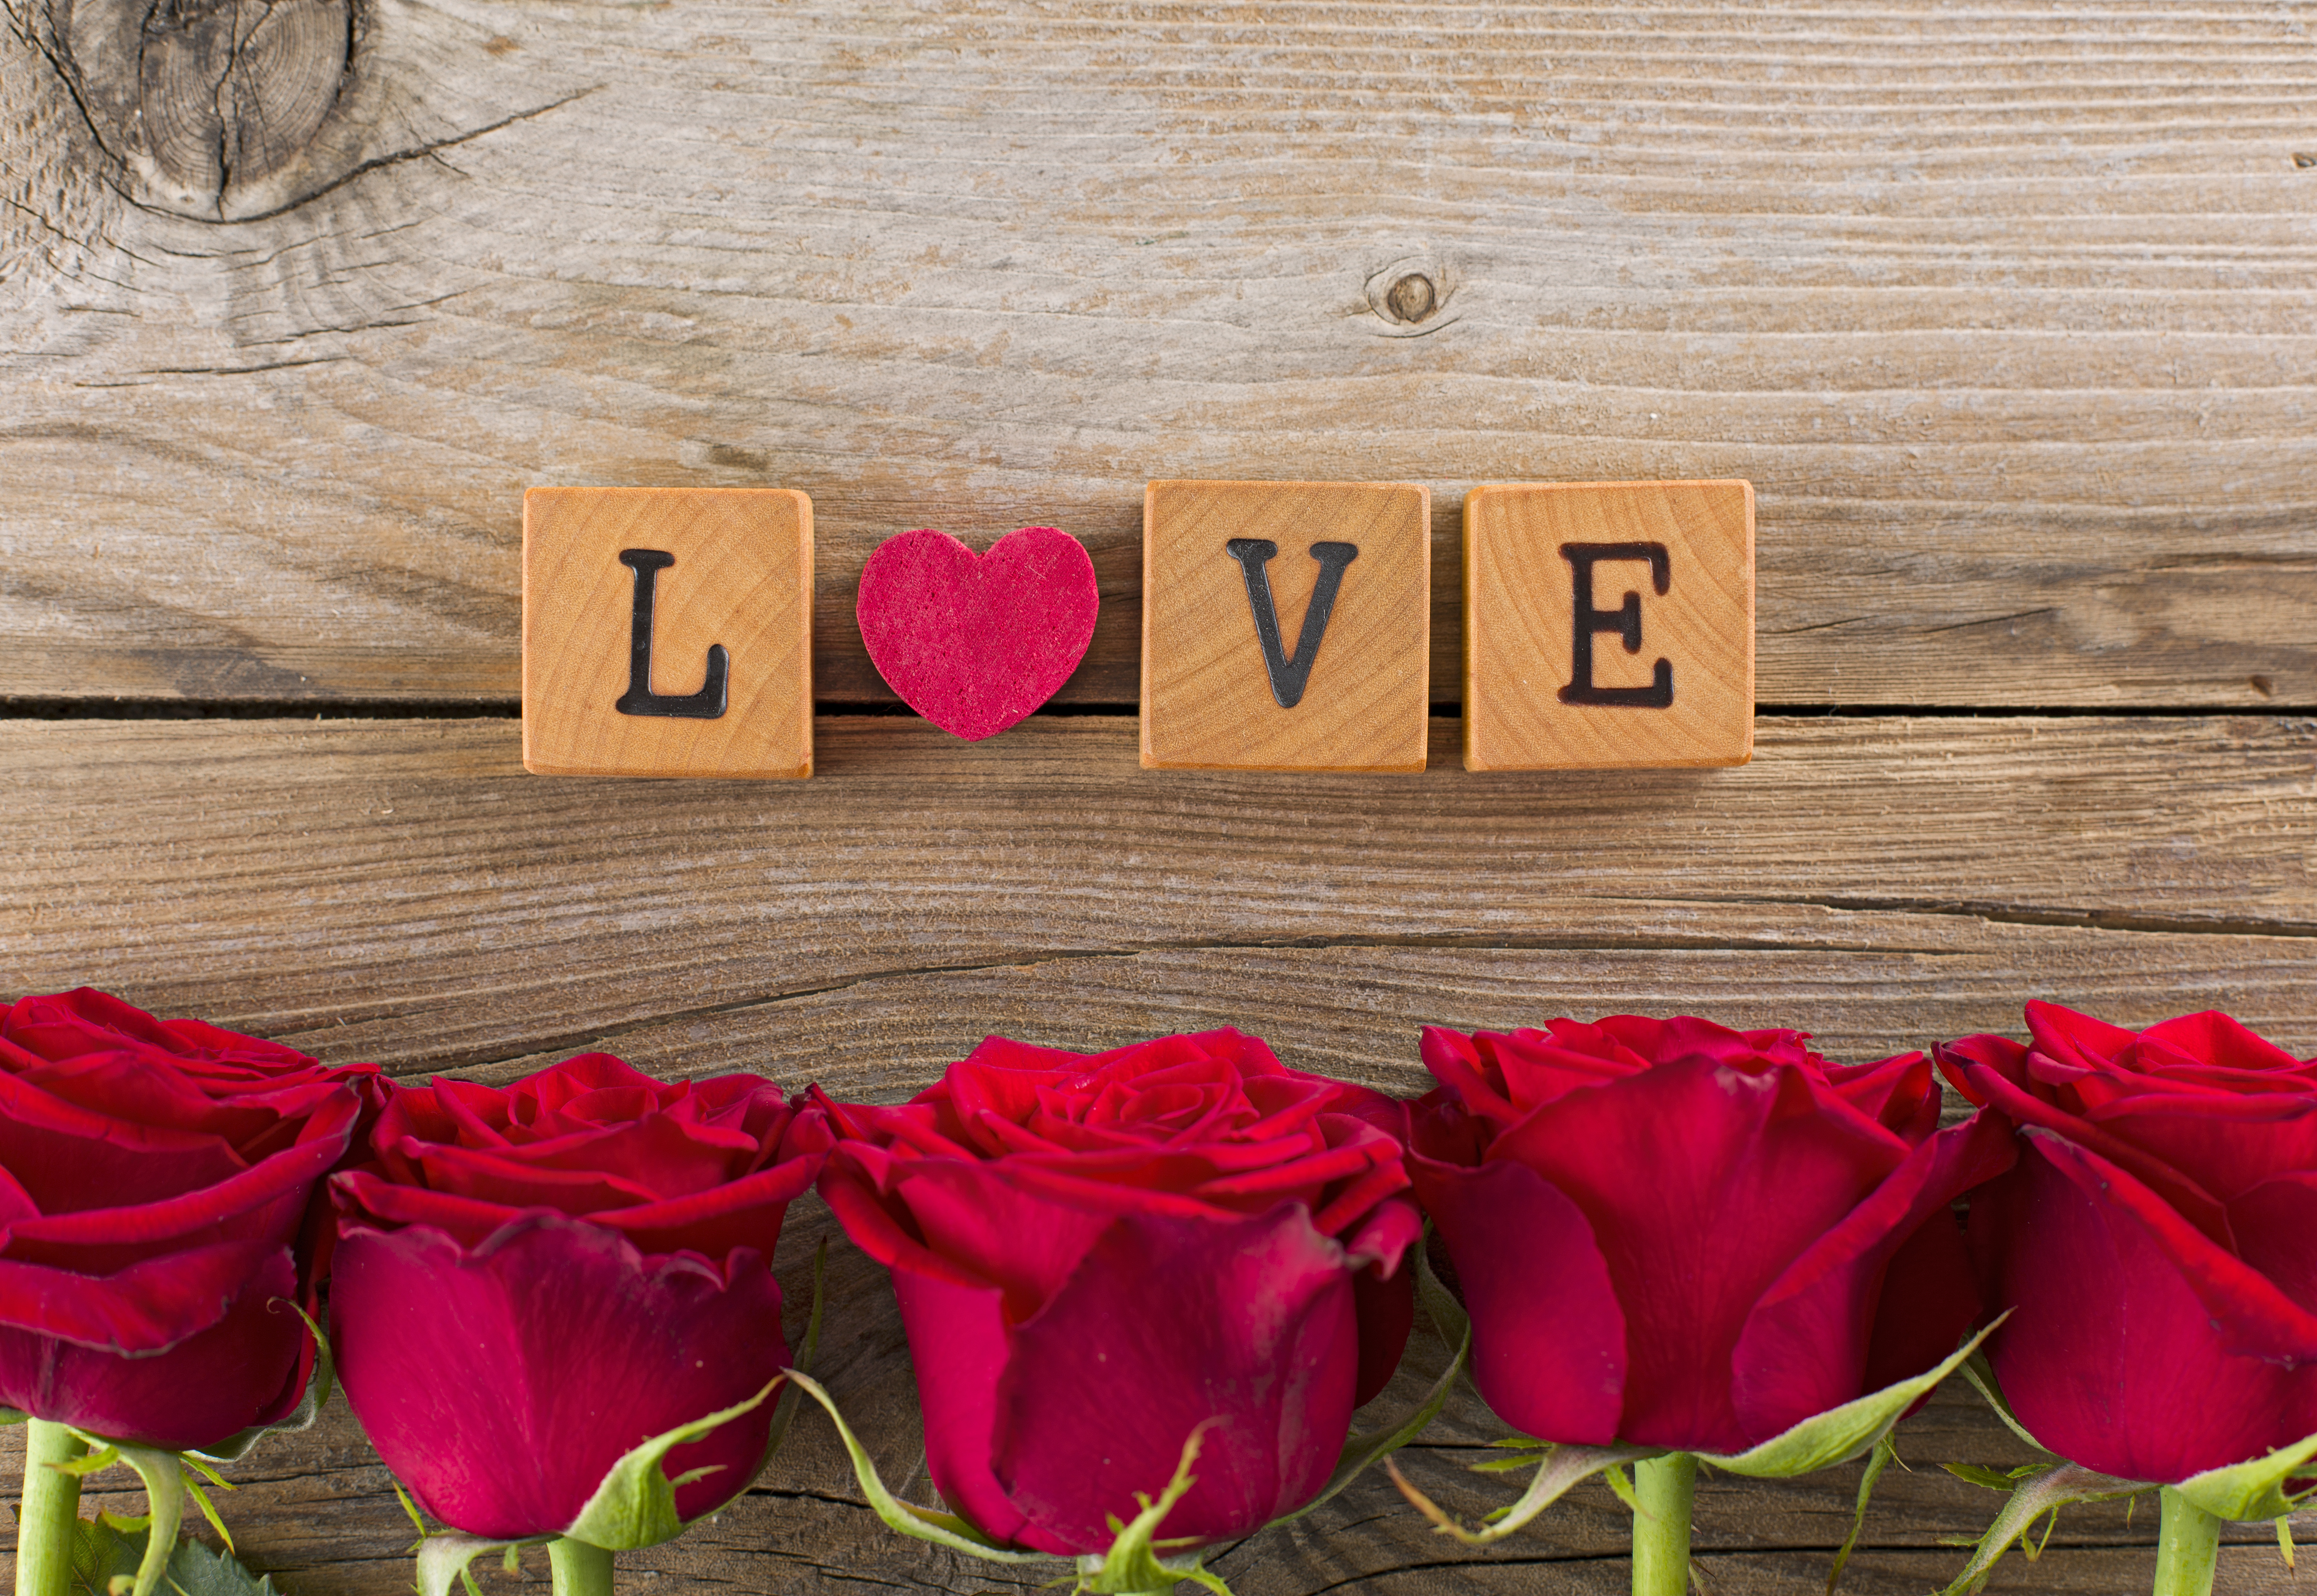 Lovers flowers. Романтические обои на рабочий стол. "Цветы любви". Картинки про любовь. Обои на рабочий стол любовь.